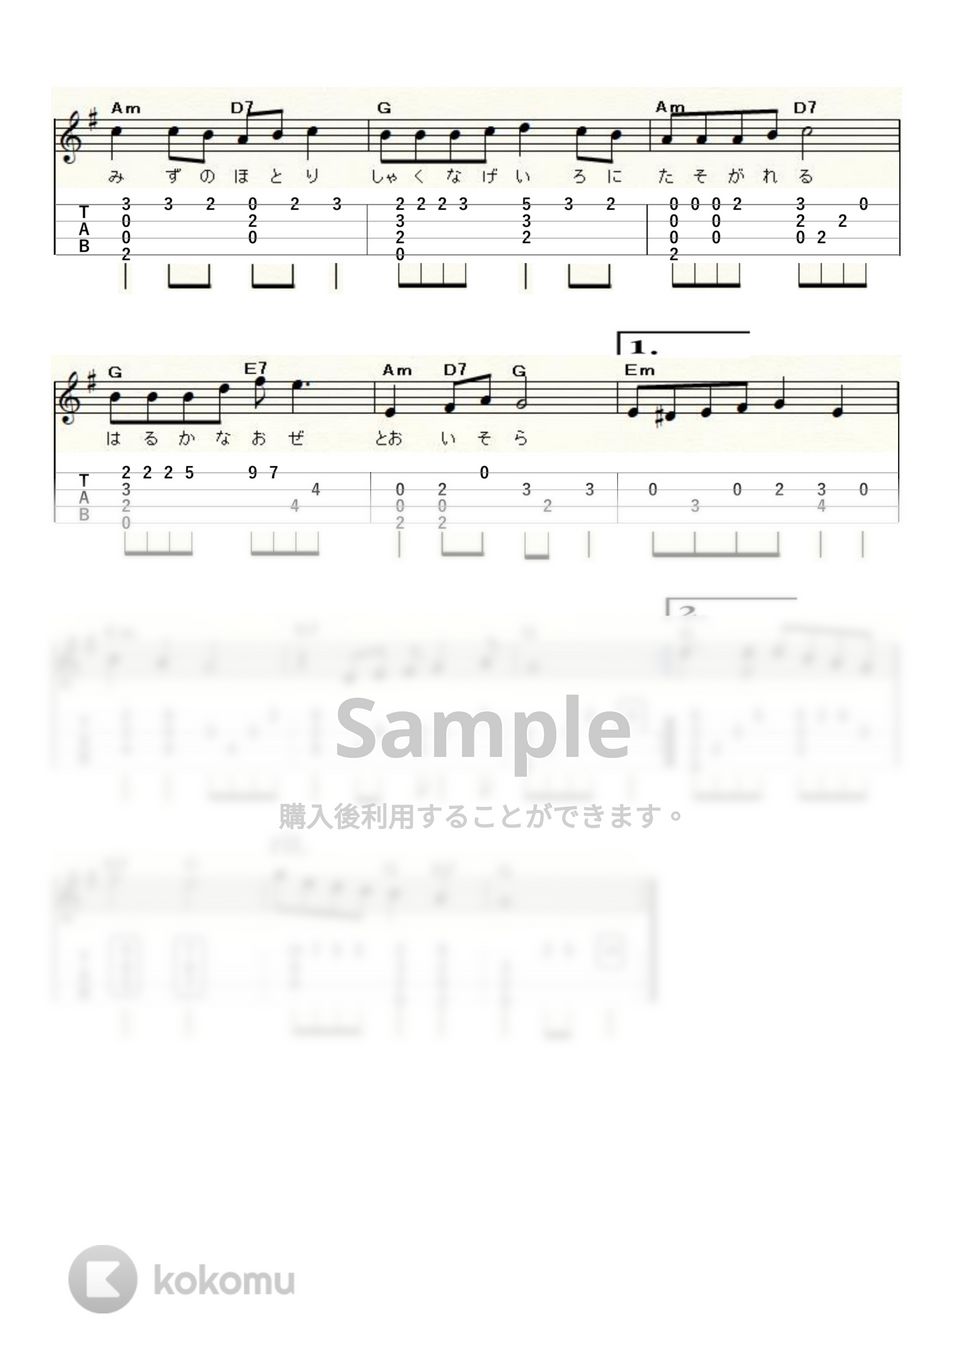 夏の思い出 (ｳｸﾚﾚｿﾛ / High-G,Low-G / 初級) by ukulelepapa